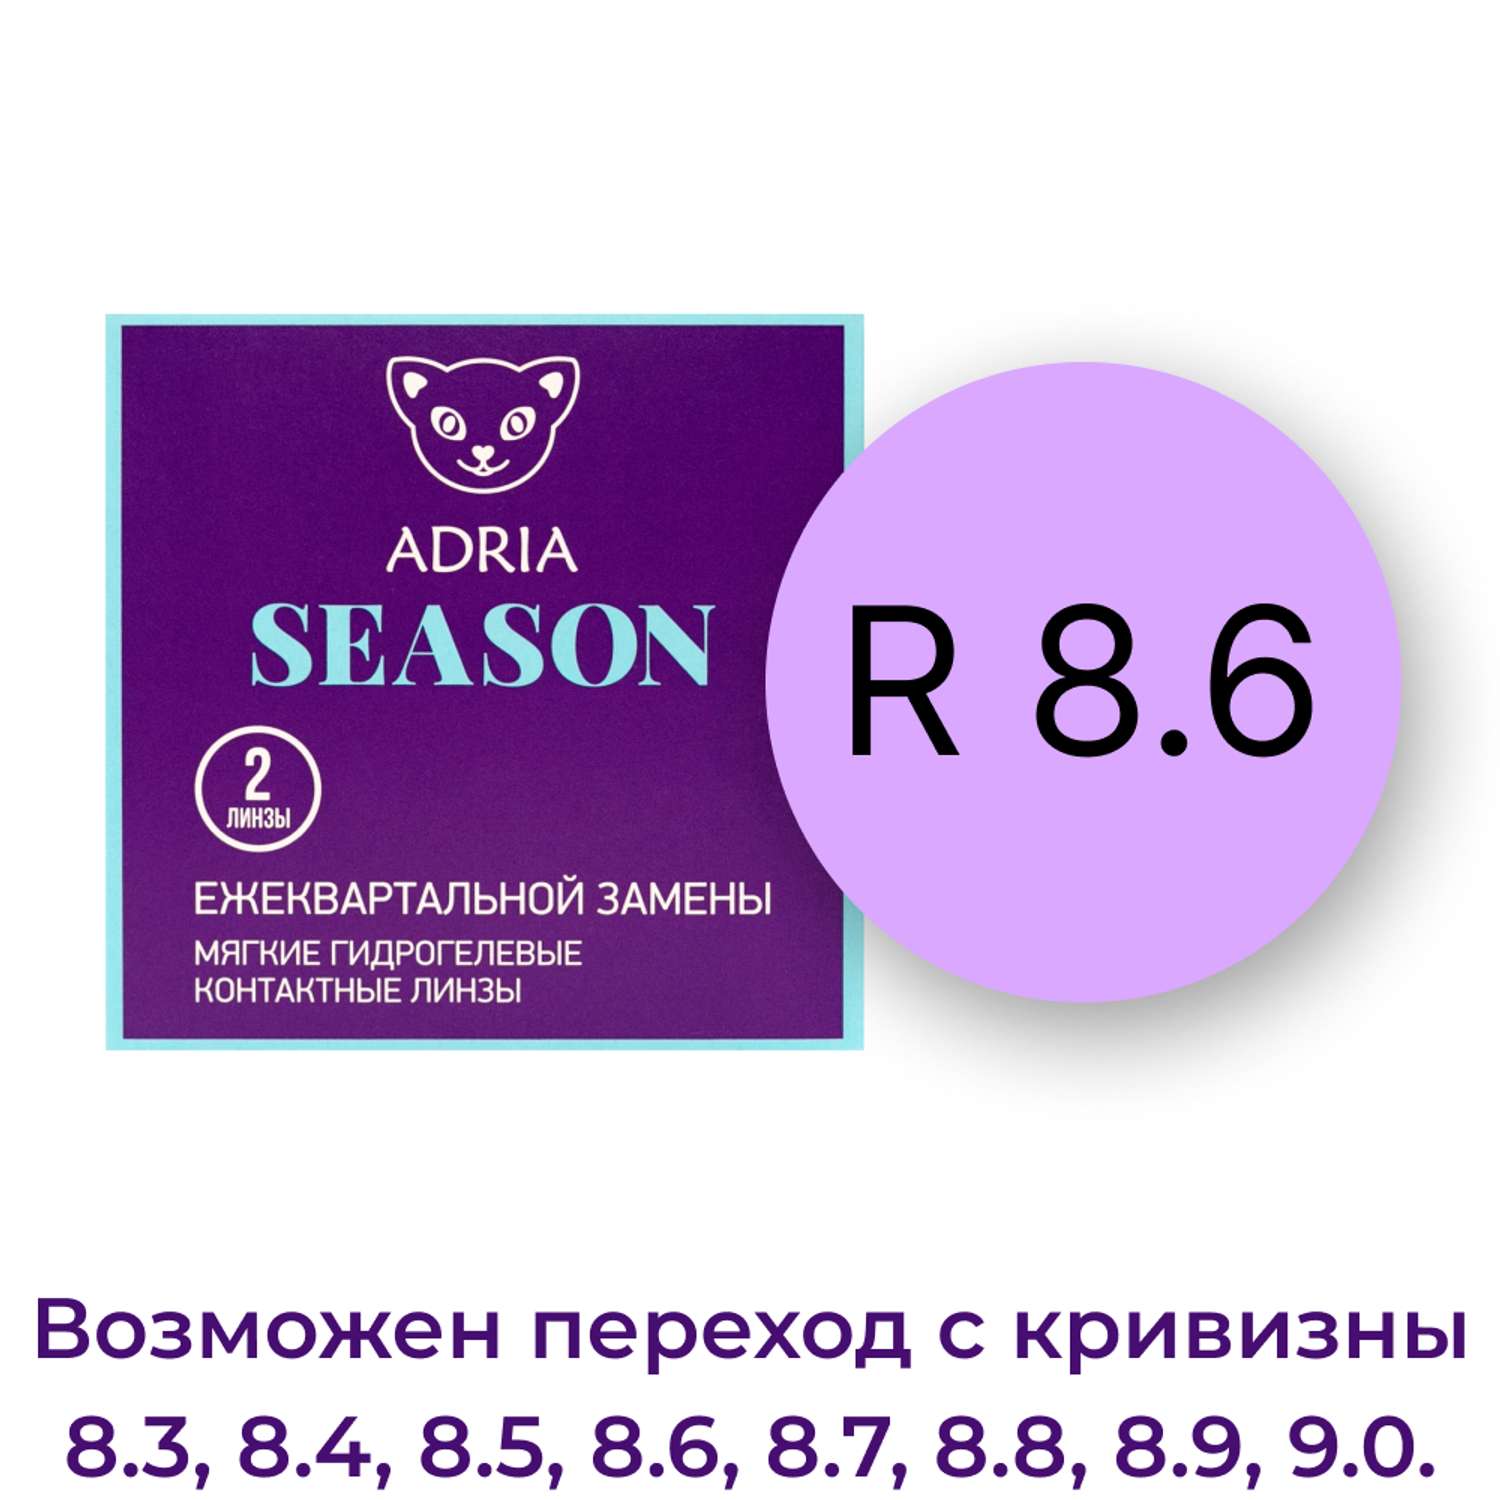 Контактные линзы ADRIA Season 2 линзы R 8.6 -4.00 - фото 3